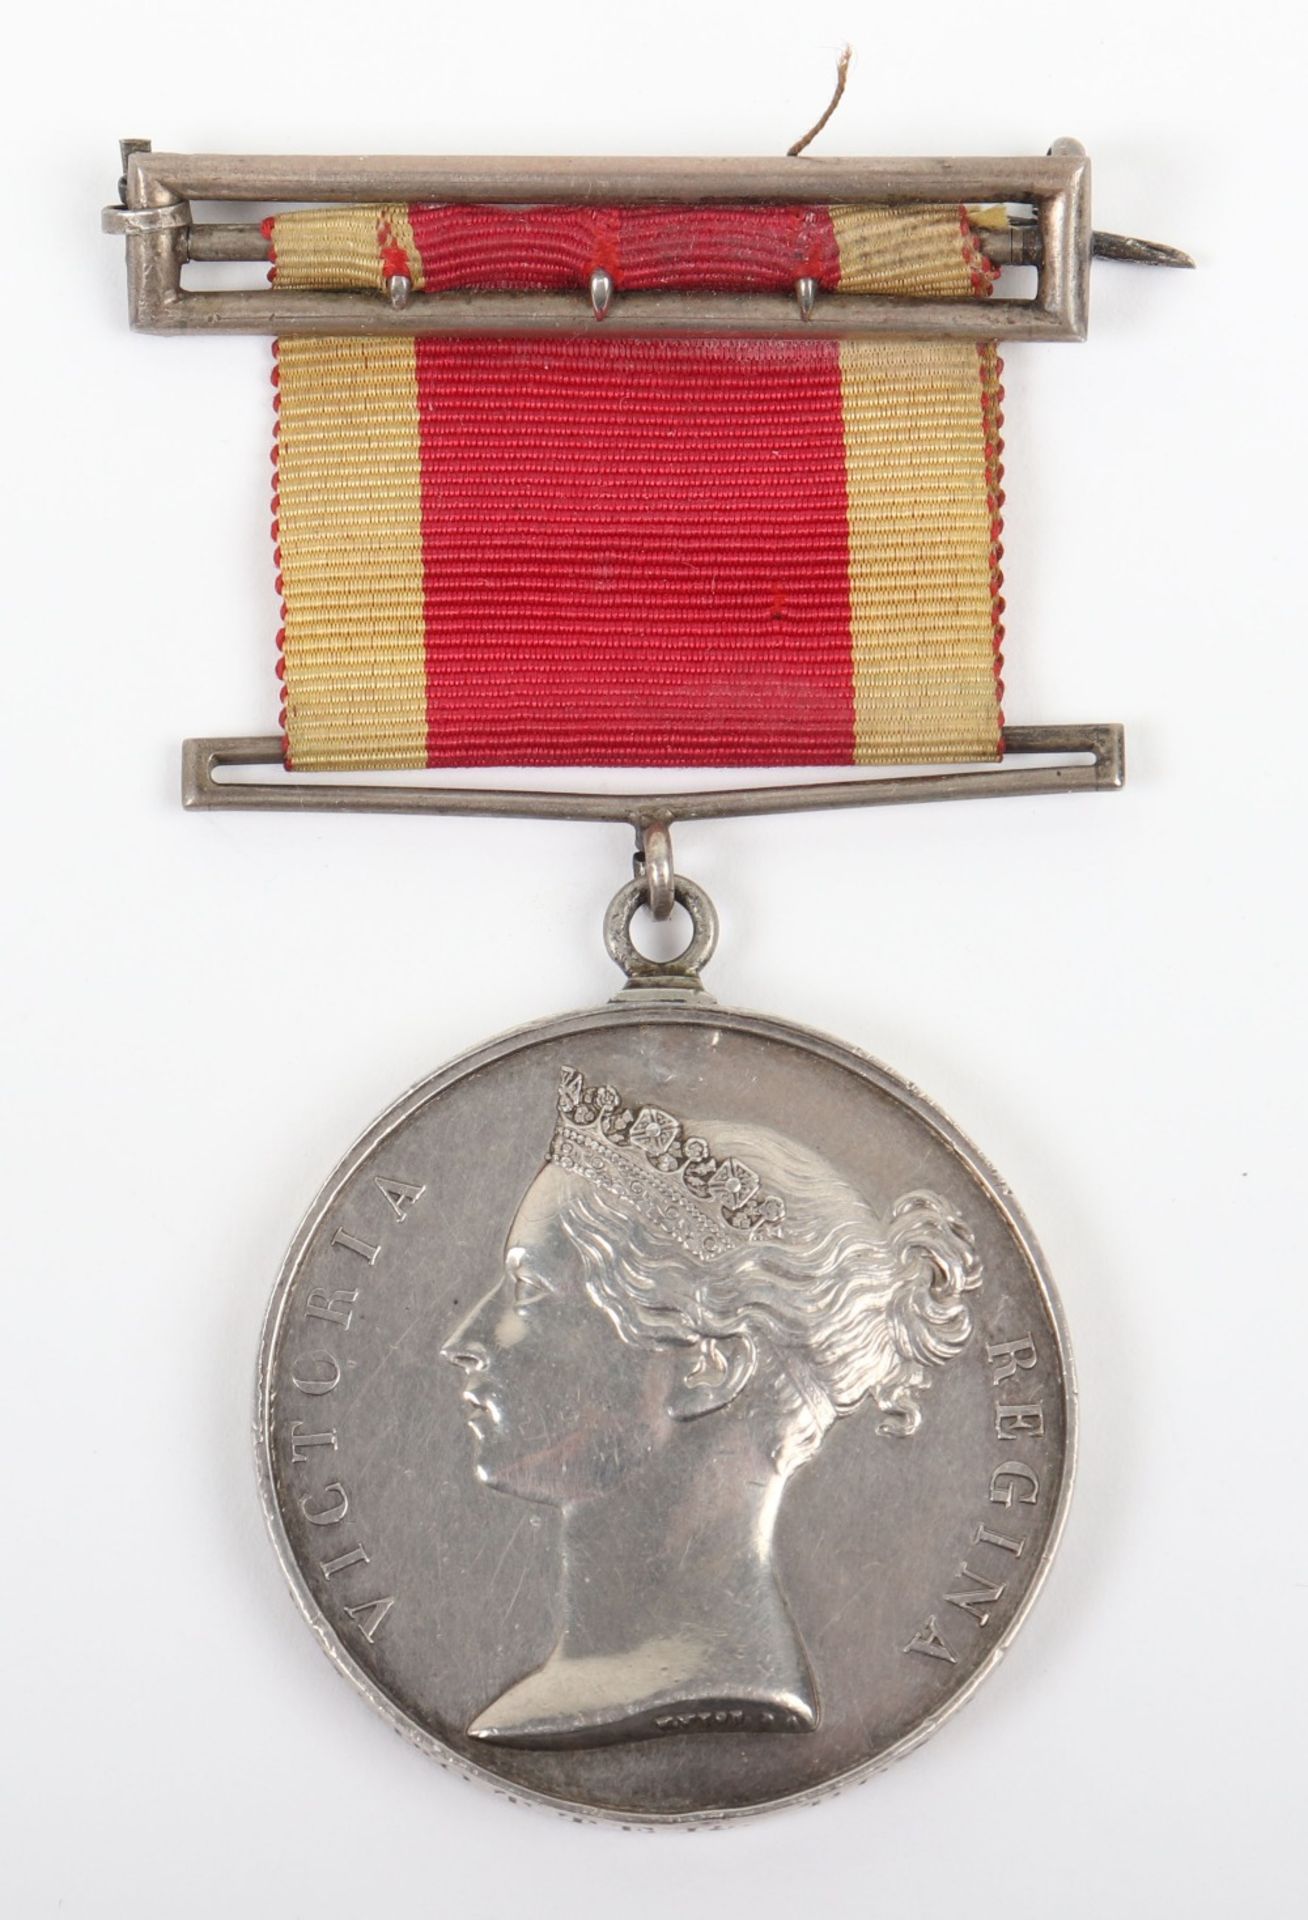 Victorian China 1842 War Medal Royal Marines